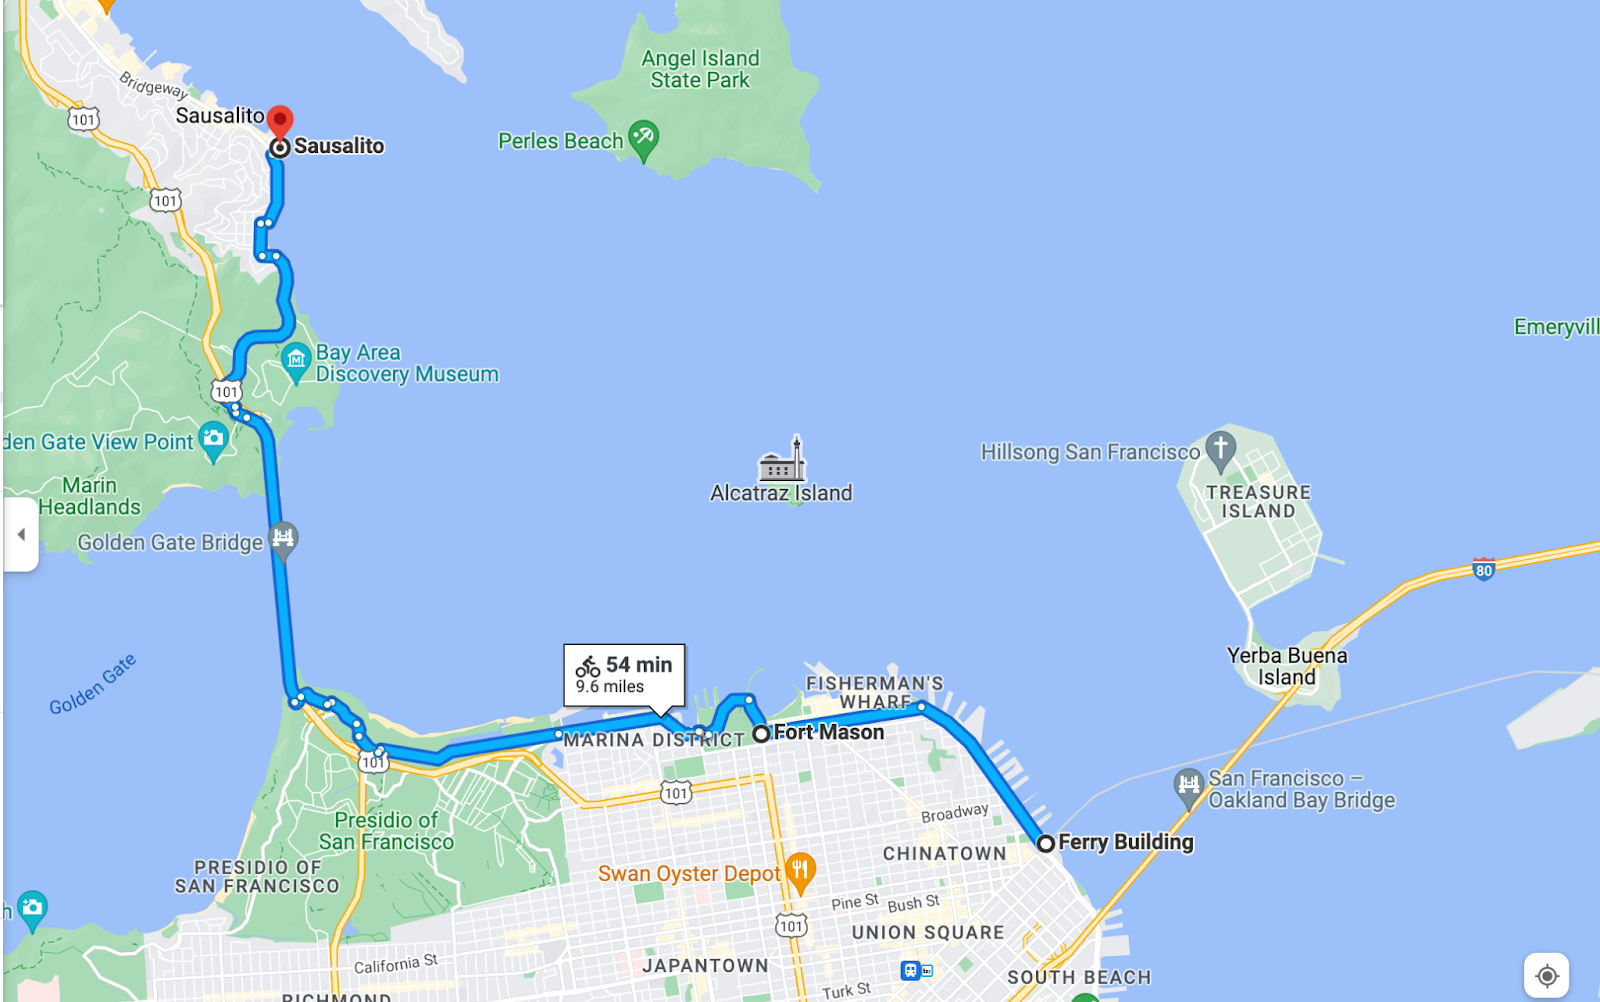 Golden Gate Bridge bike route, Ferry building to Sausalito bike route